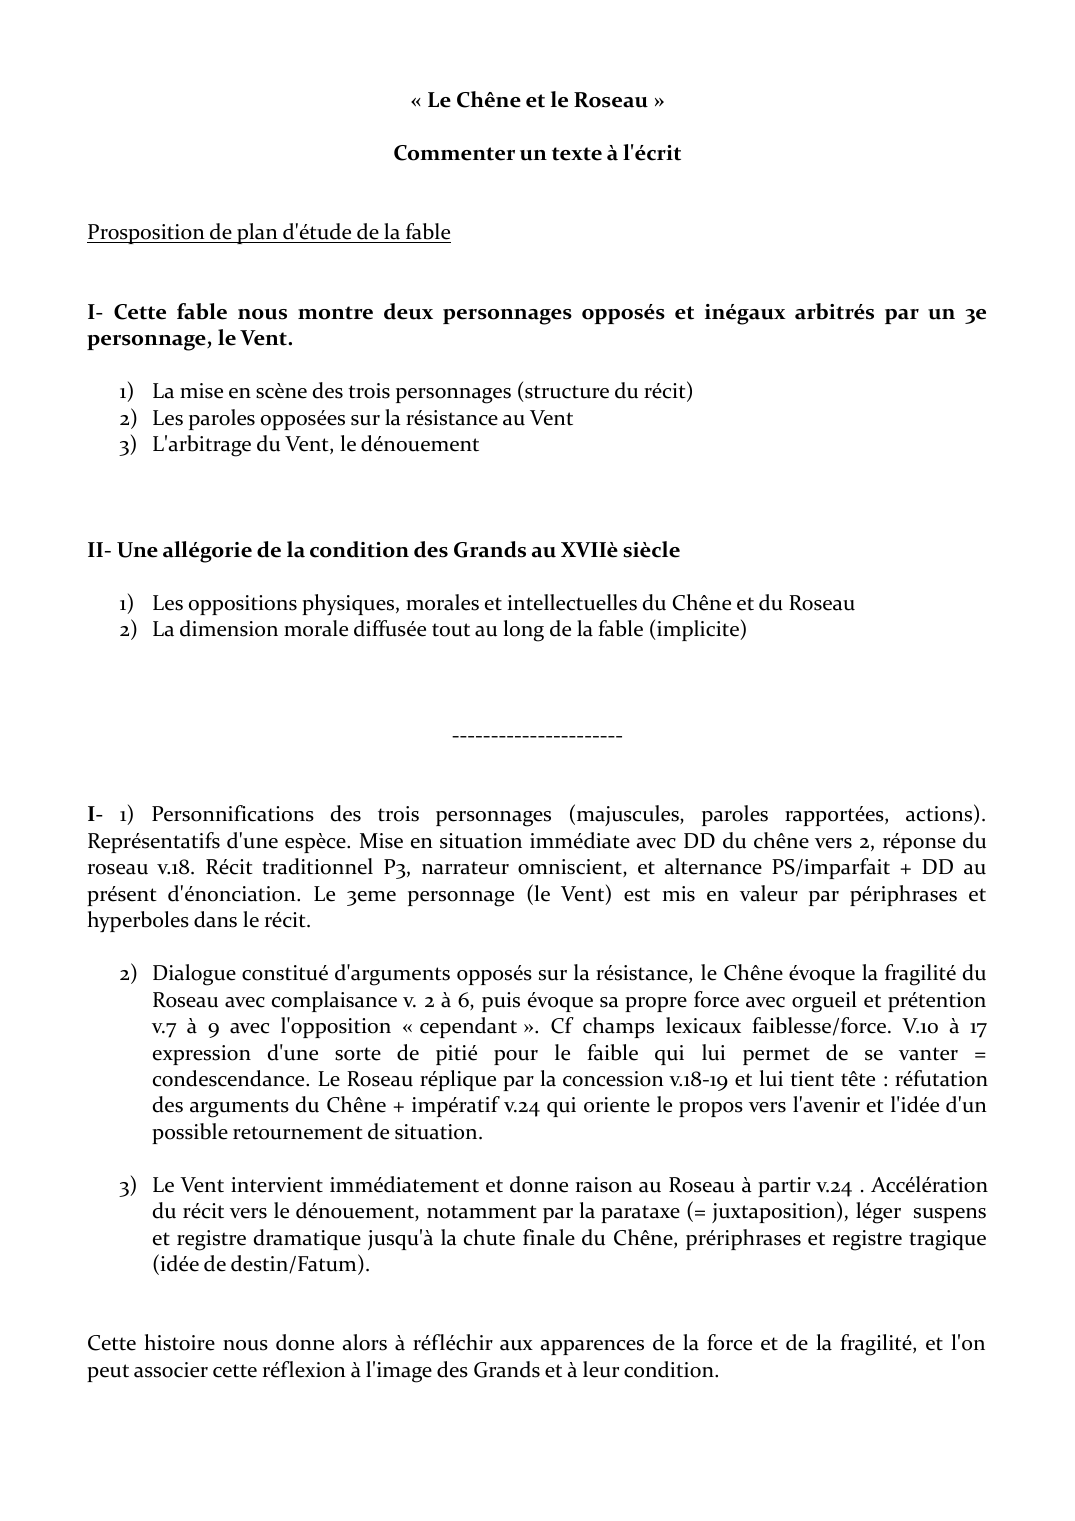 Prévisualisation du document « Le Chêne et le Roseau » de La Fontaine - commentaire